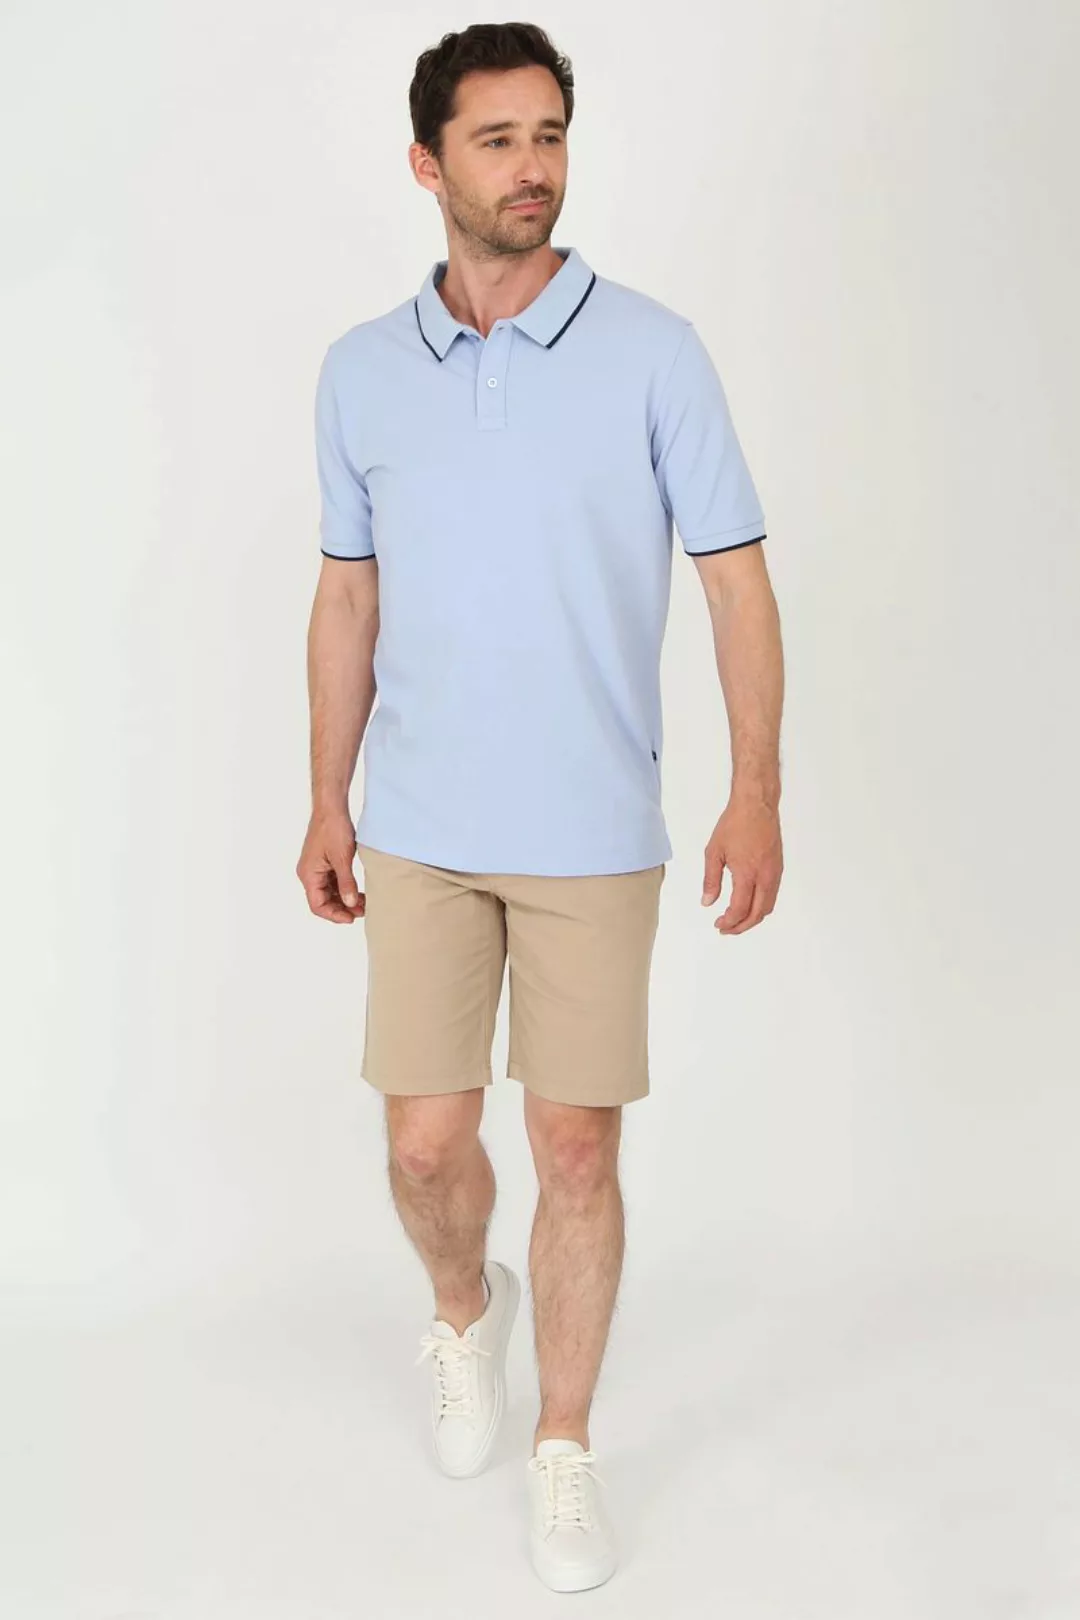 Suitable Respect Poloshirt Tip Ferry Hellblau - Größe XXL günstig online kaufen